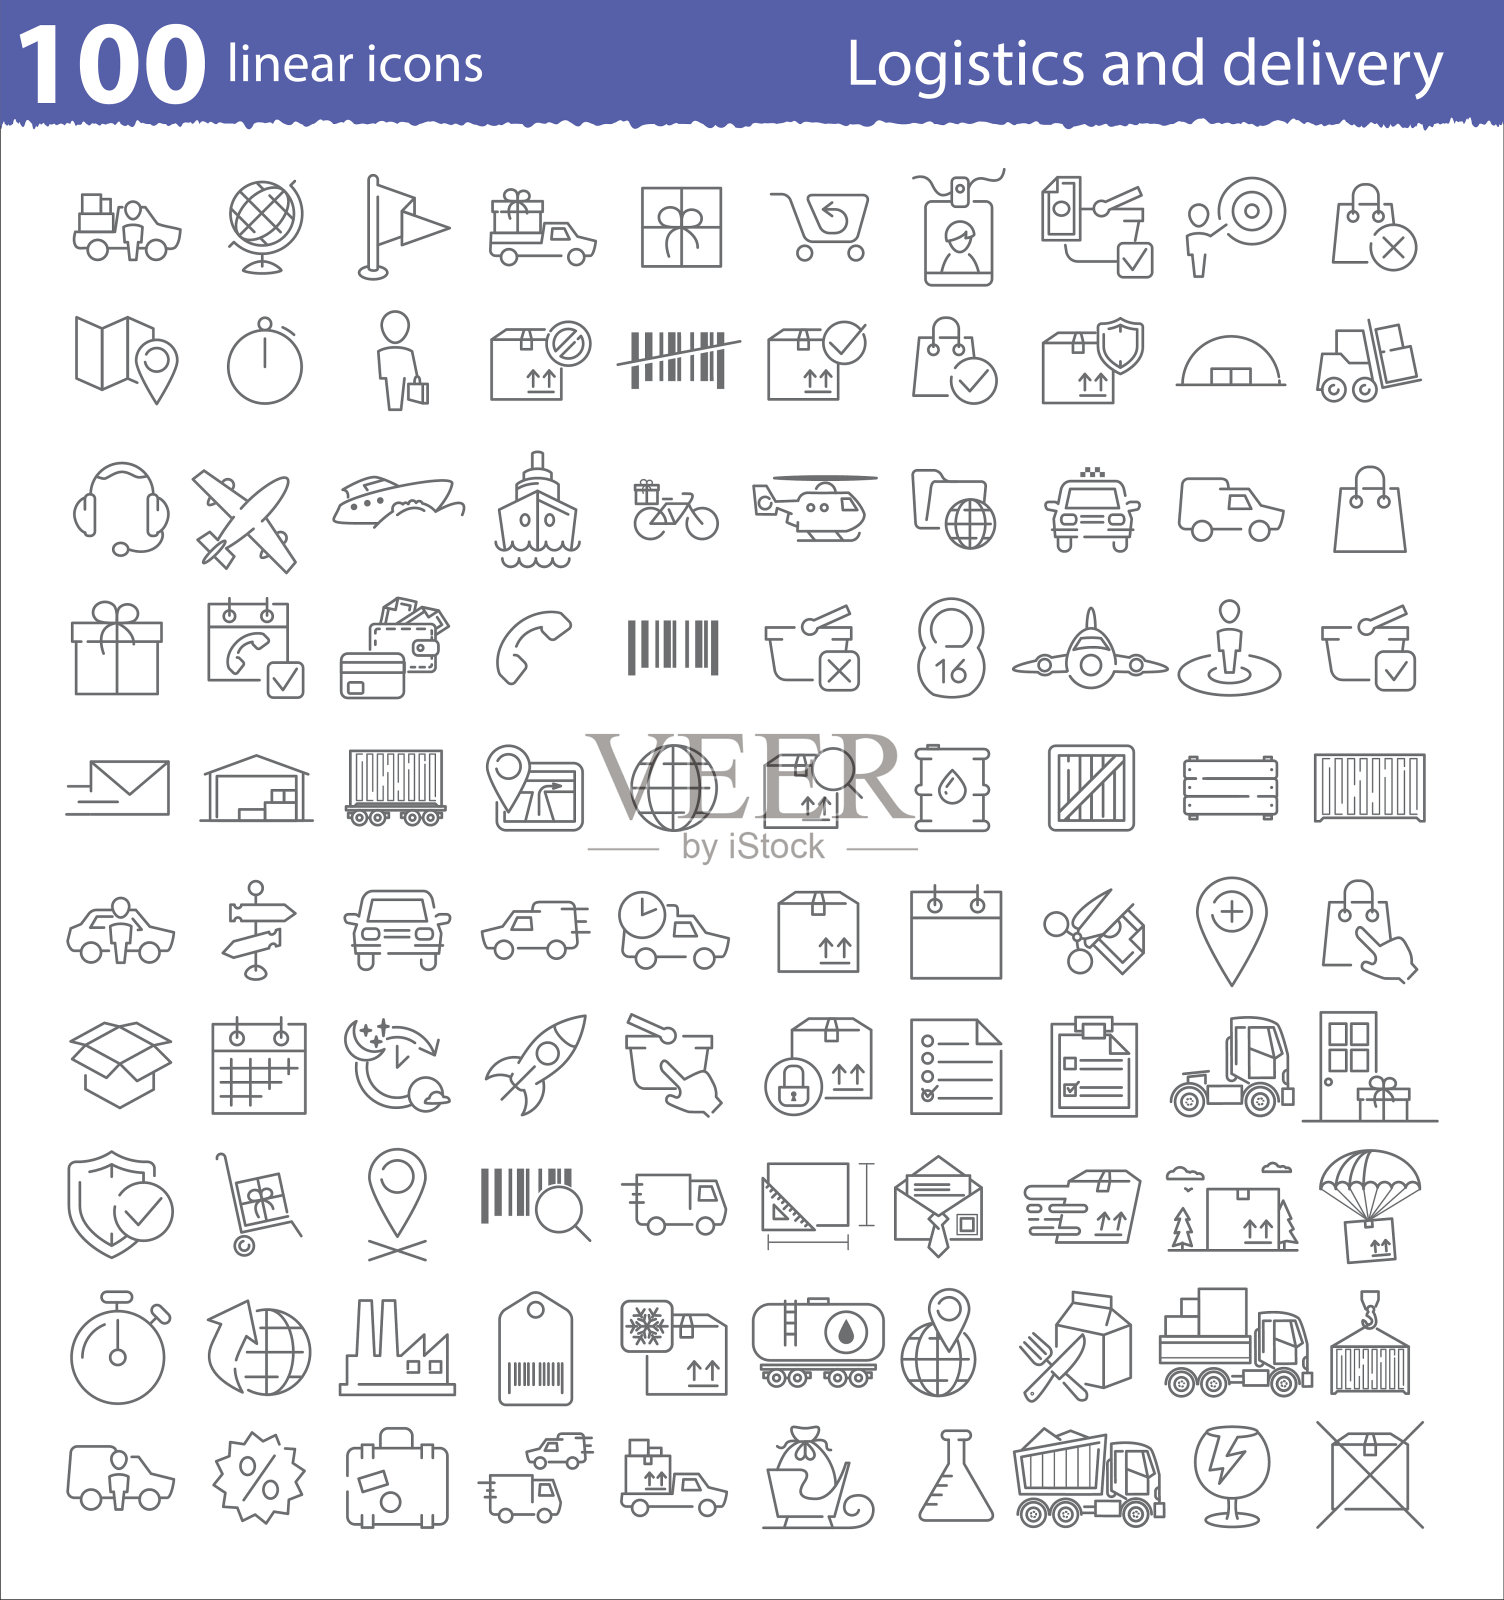 100个线性图标用于运输、物流和配送图标素材